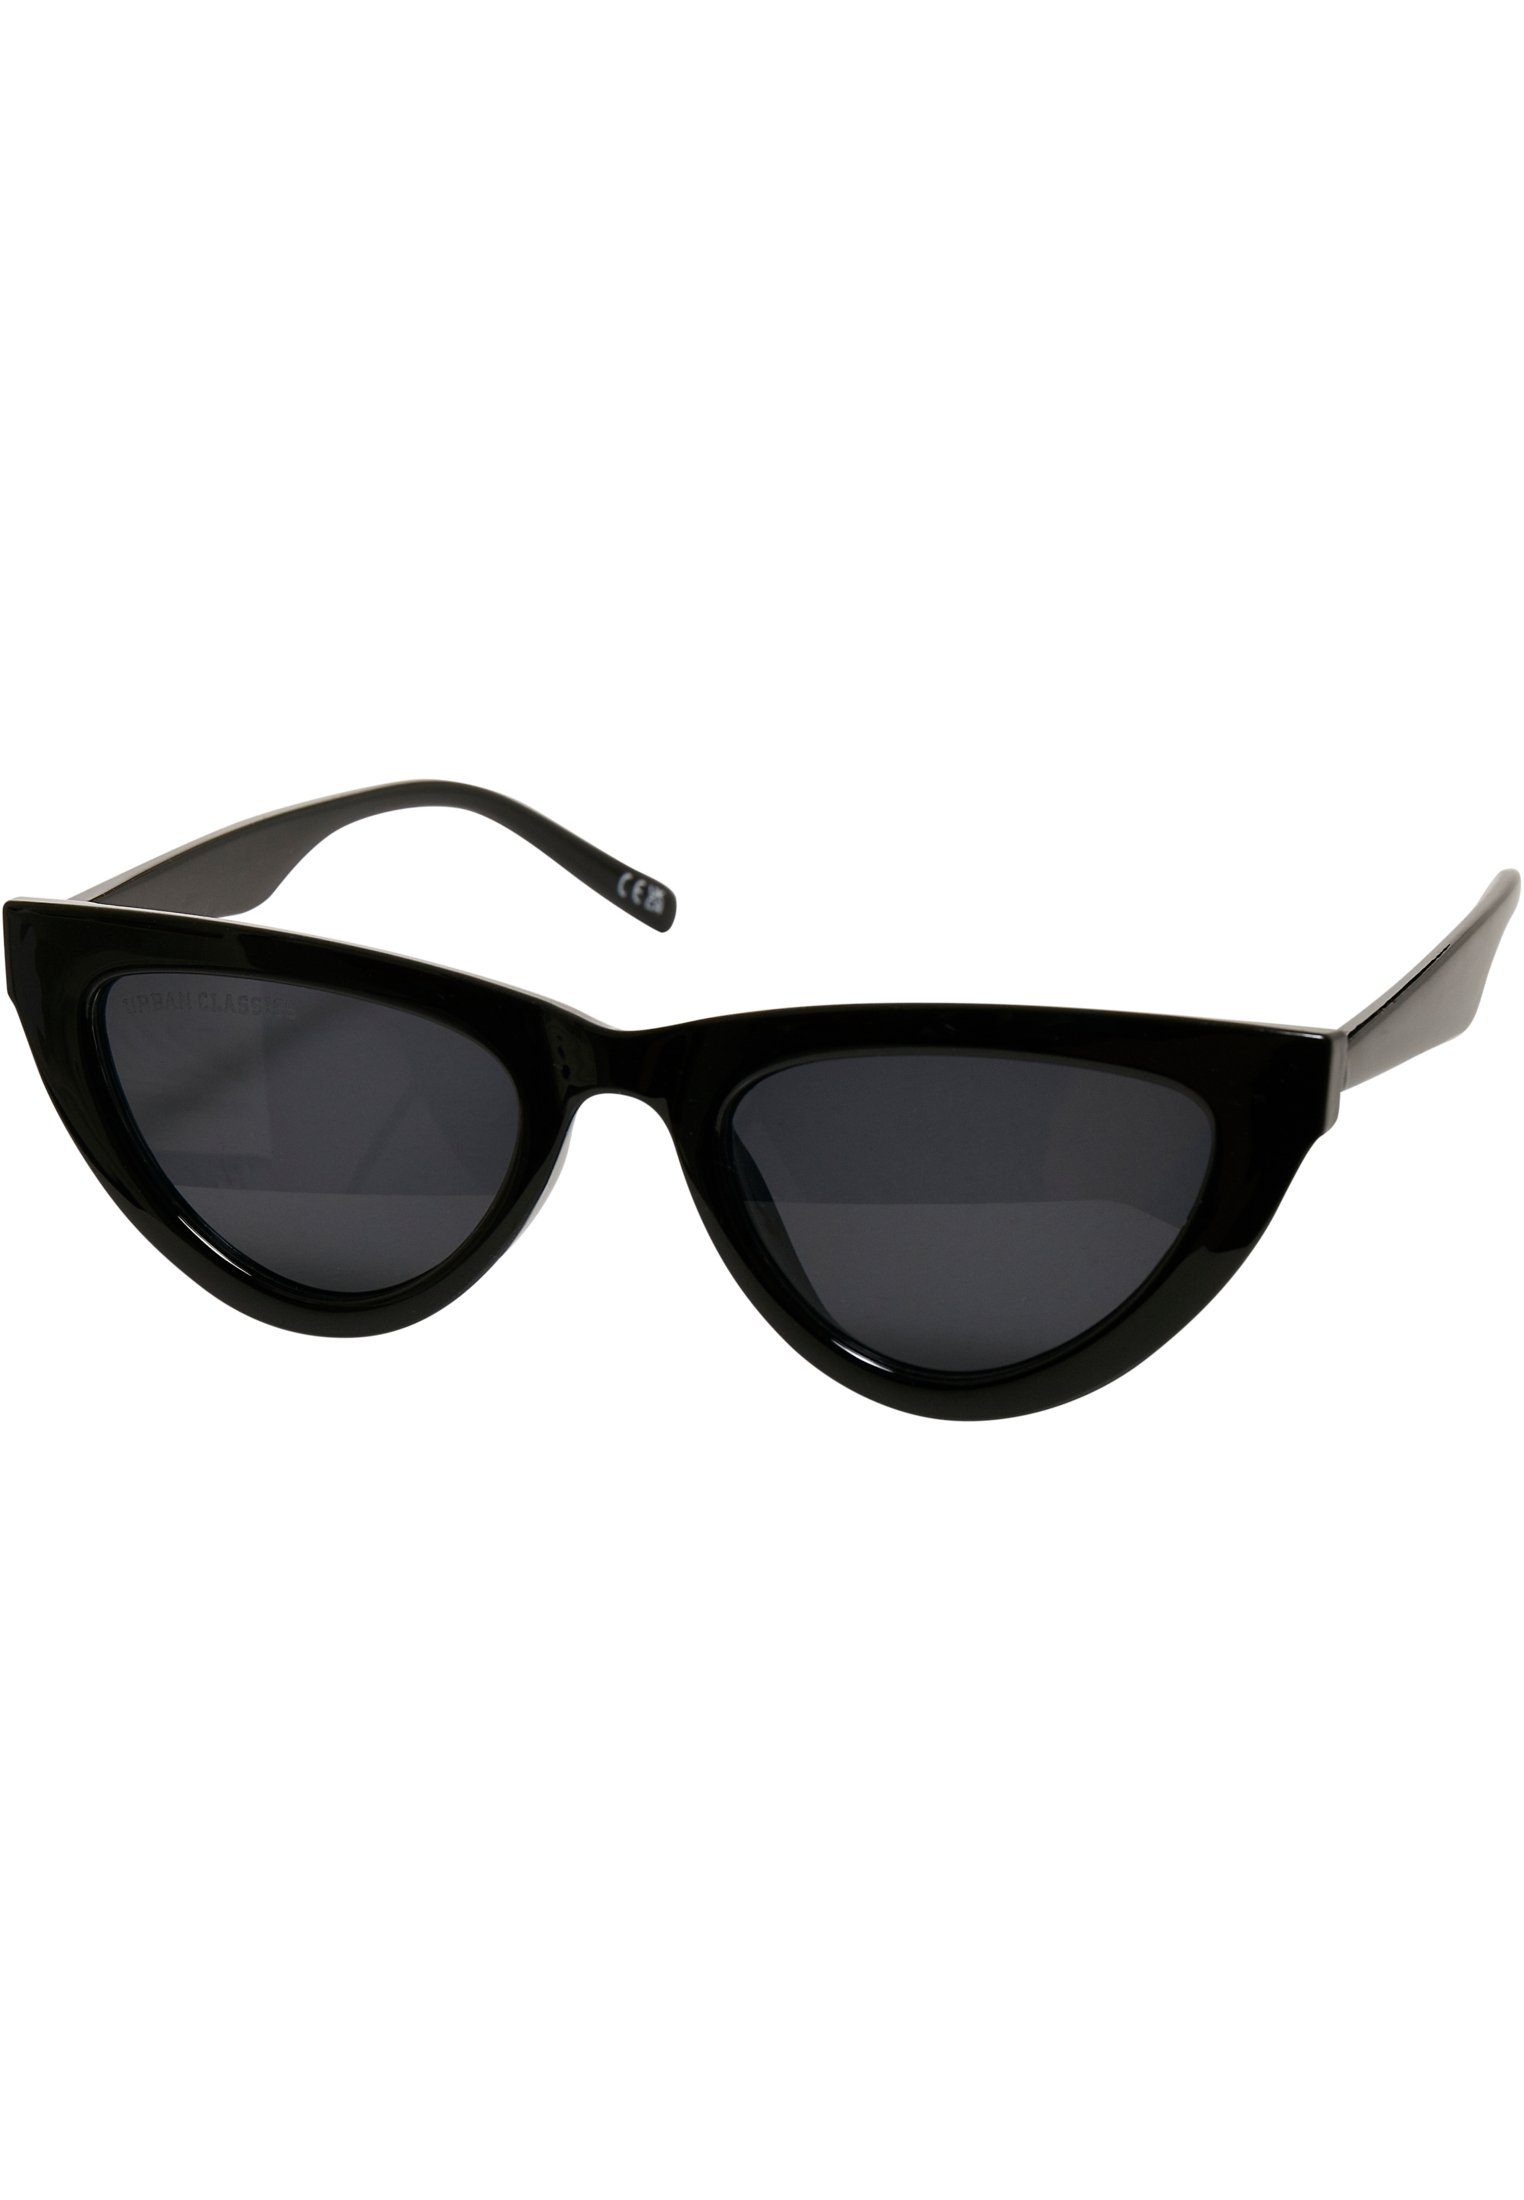 Sonnenbrille URBAN Unisex CLASSICS Arica Sunglasses